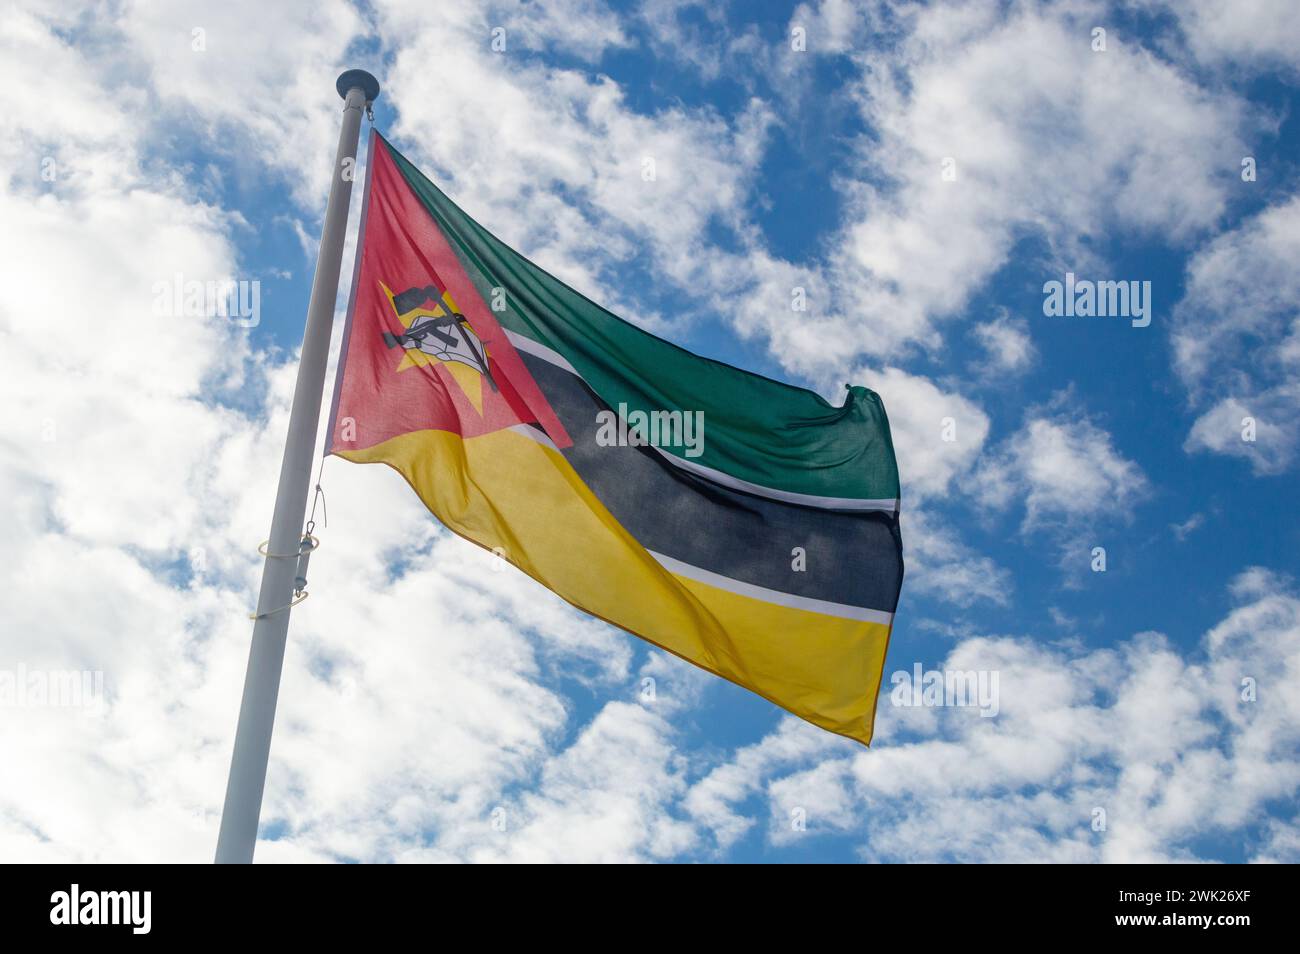 Bandiera del Mozambico che sventola nel vento. Bandiera nazionale della Repubblica del Mozambico. Bandiera con fucile Kalashnikov e zappa, sovrapposta a un libro aperto. Foto Stock